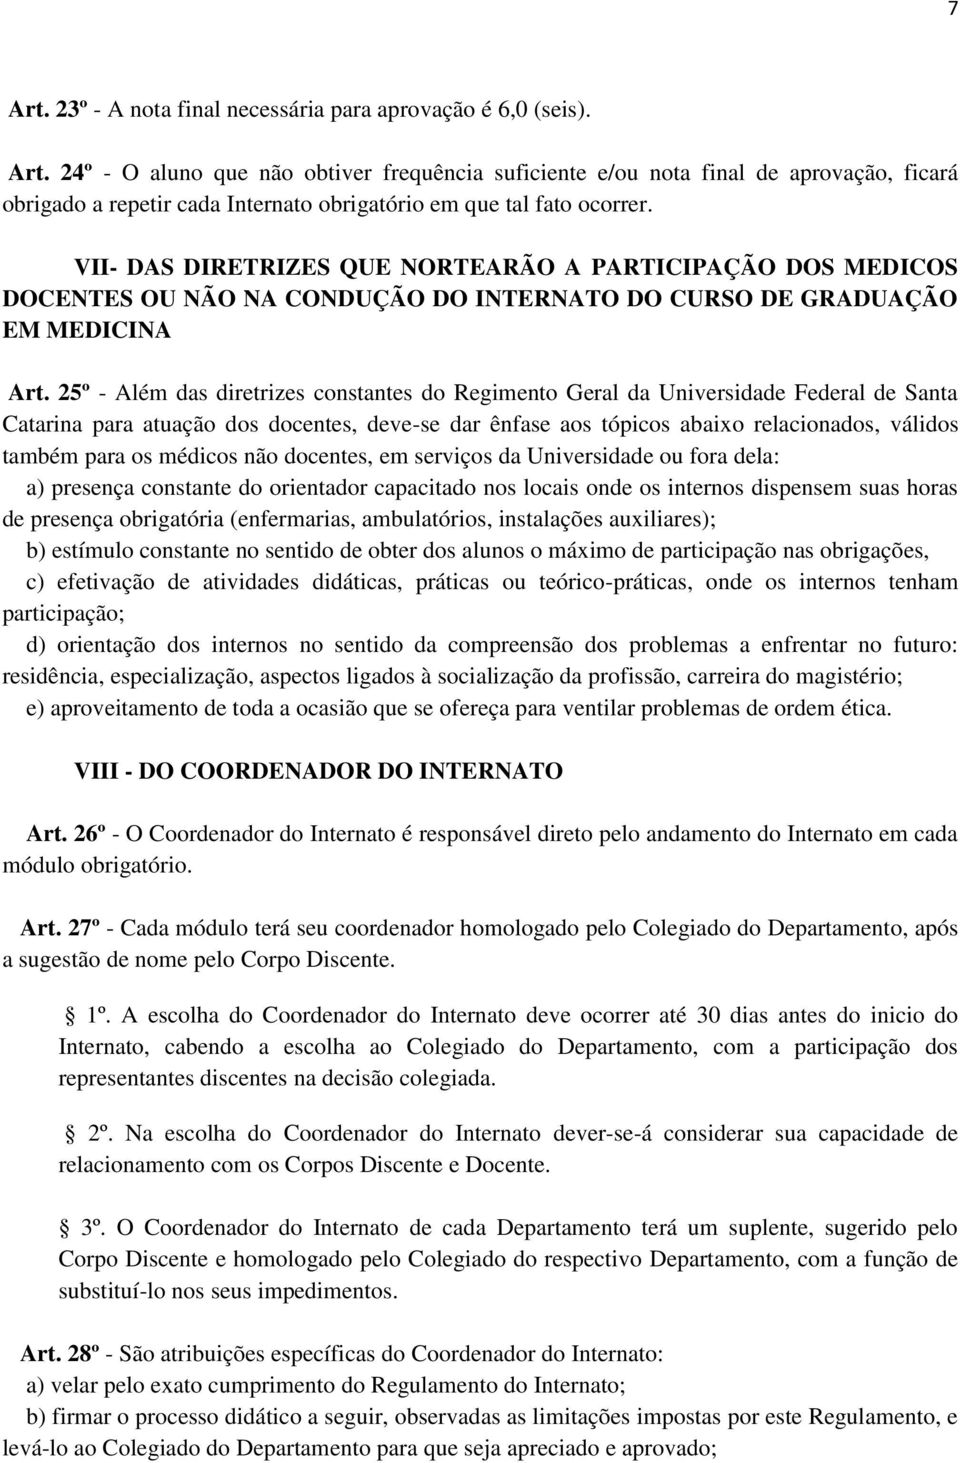 25º - Além das diretrizes constantes do Regimento Geral da Universidade Federal de Santa Catarina para atuação dos docentes, deve-se dar ênfase aos tópicos abaixo relacionados, válidos também para os